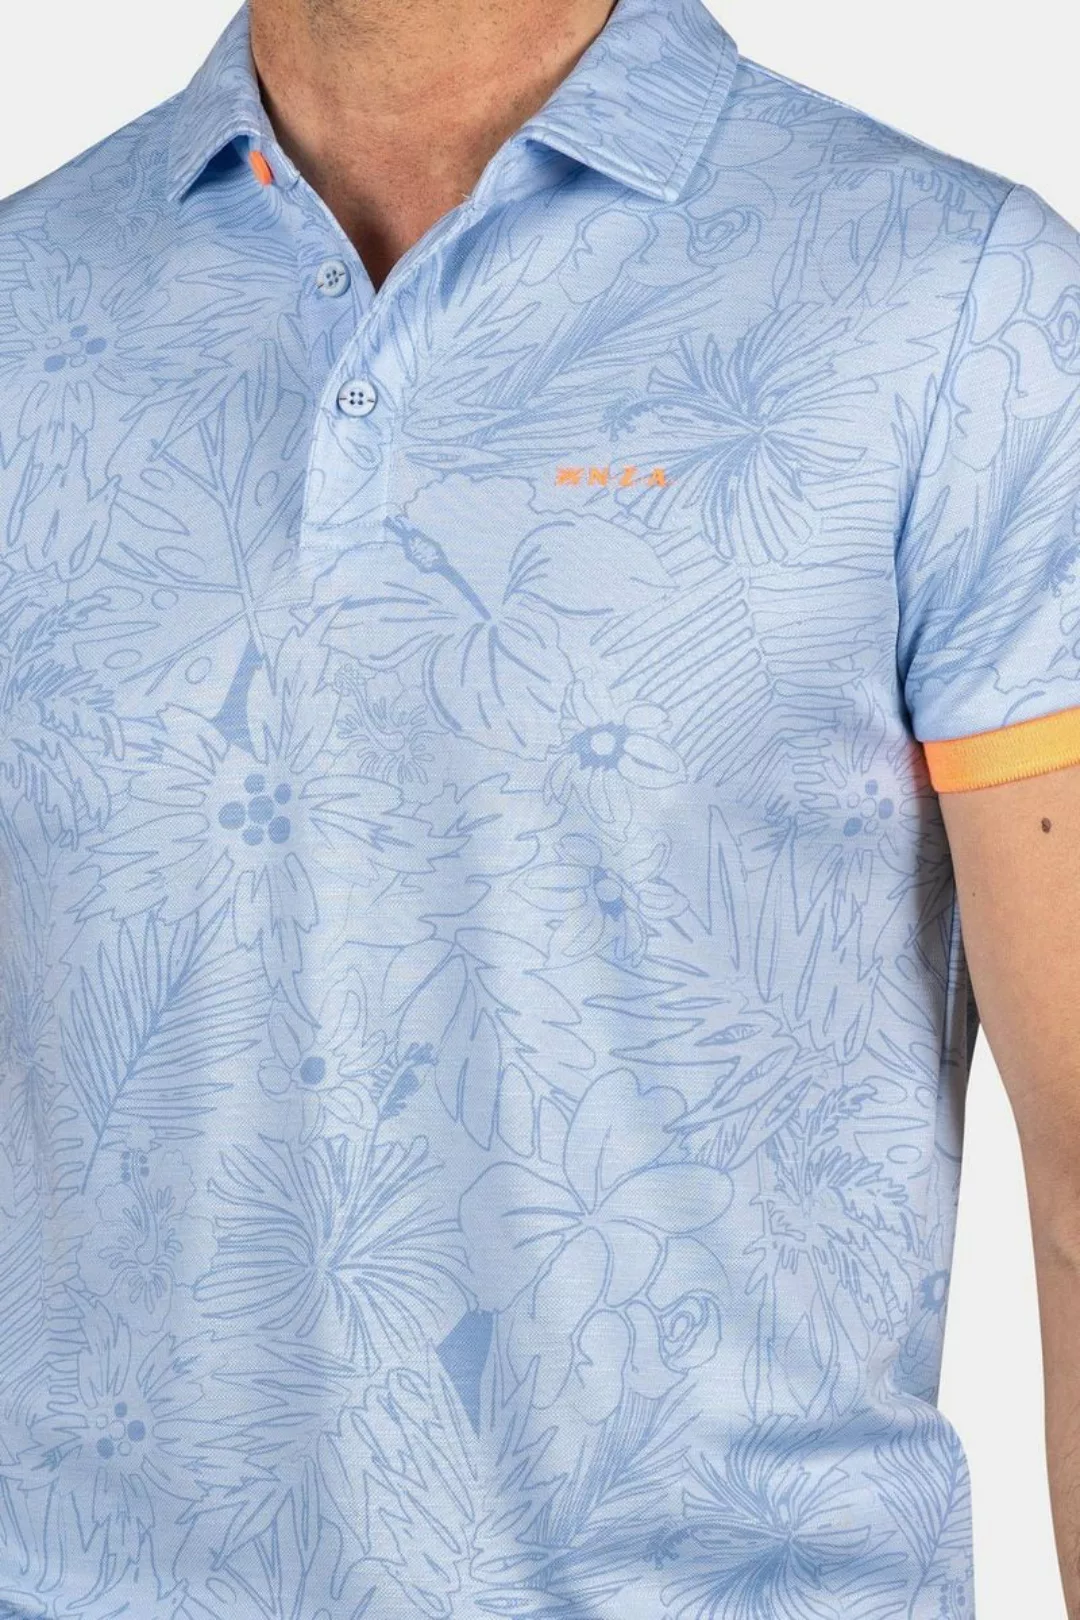 NZA Poloshirt Blake Hellblau - Größe 3XL günstig online kaufen